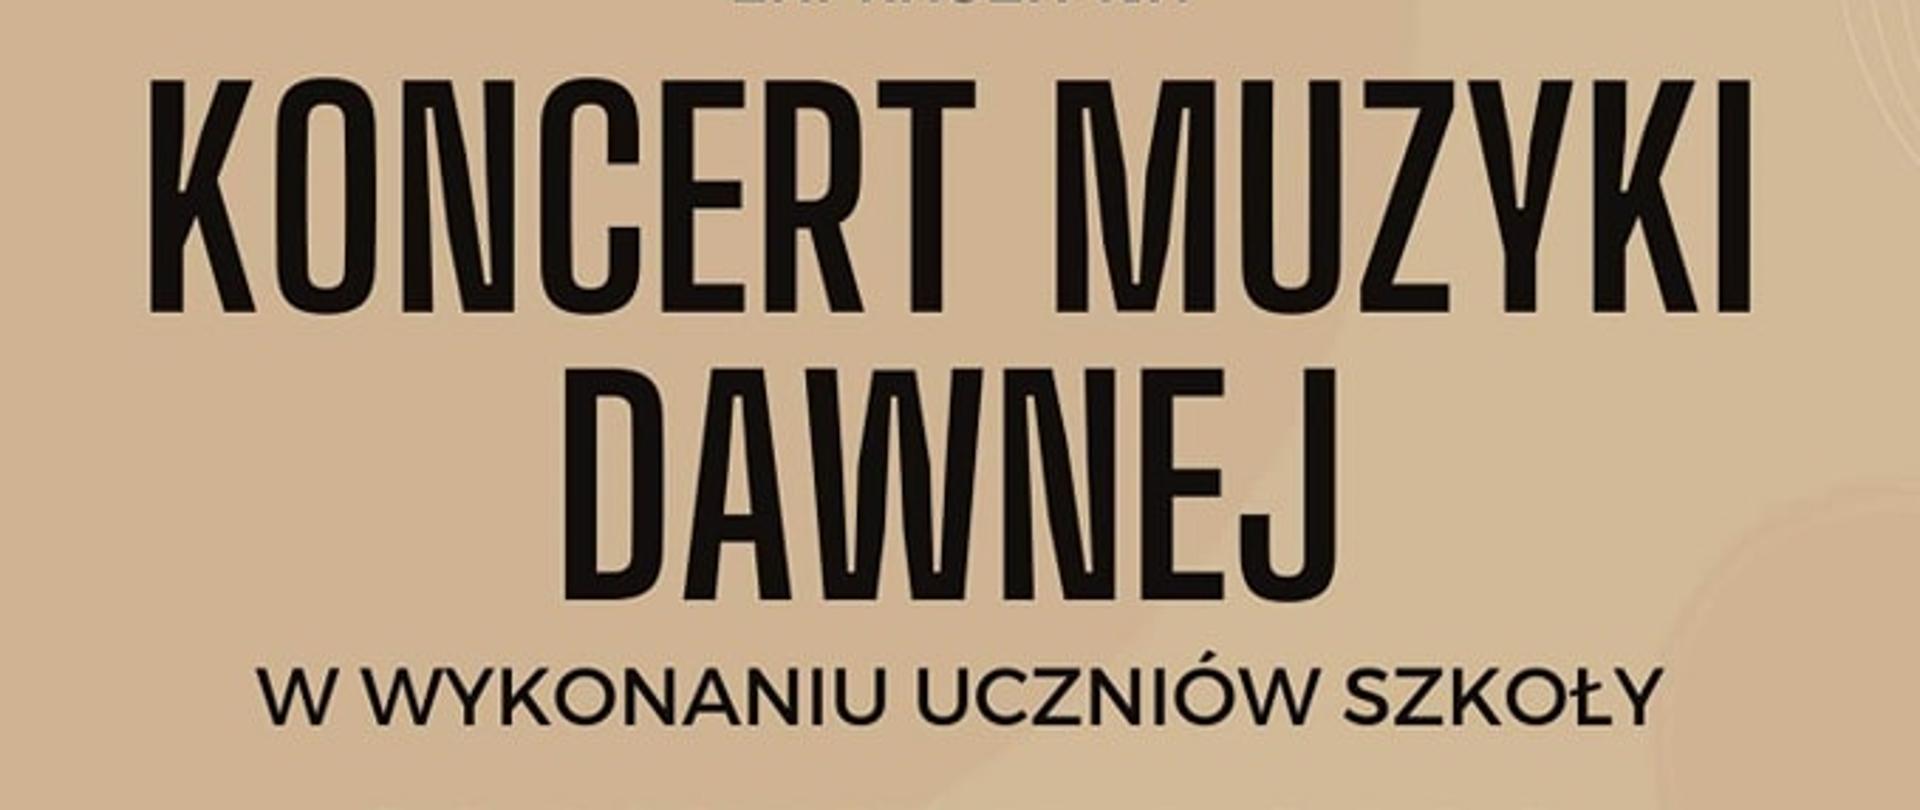 Plakat z napisem Koncert Muzyki Dawnej i informacjami na beżowym tle, u dołu nachylone brązowe pudła rezonansowe skrzypiec a pomiędzy nimi logo Miejskiej Biblioteki Publicznej oraz logo PSM I i II stopnia w Lesznie.